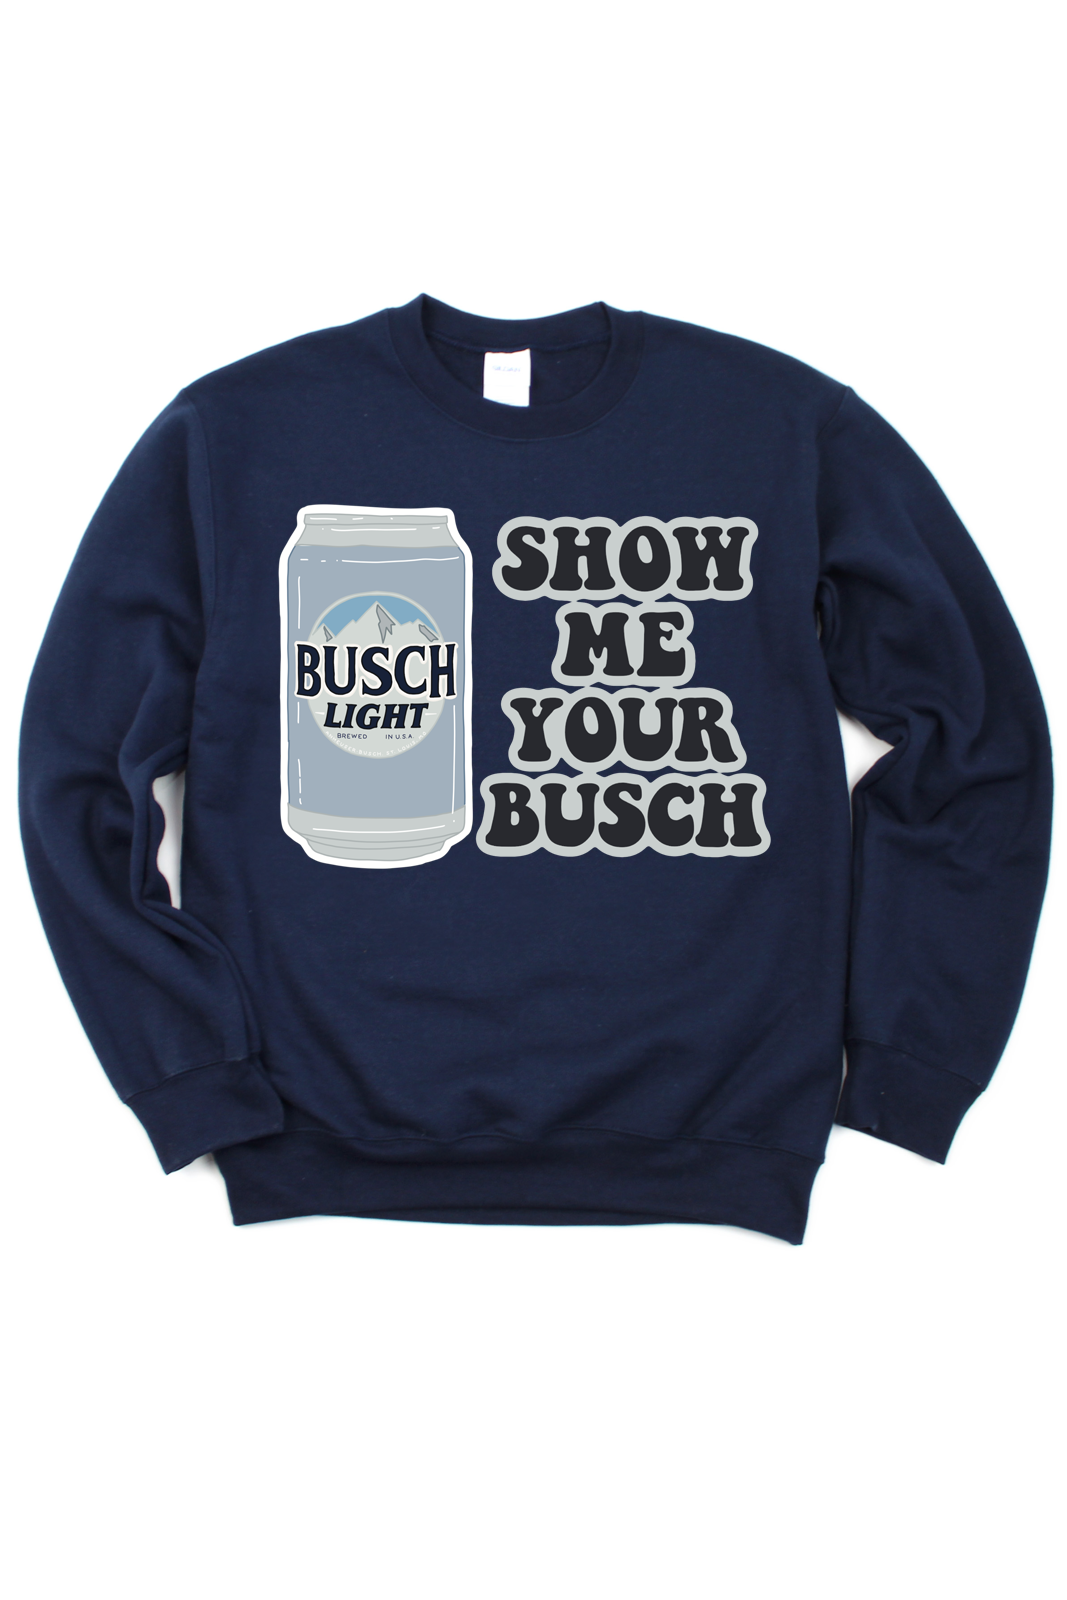 Show Me Your Busch Tee/Sweatshirt